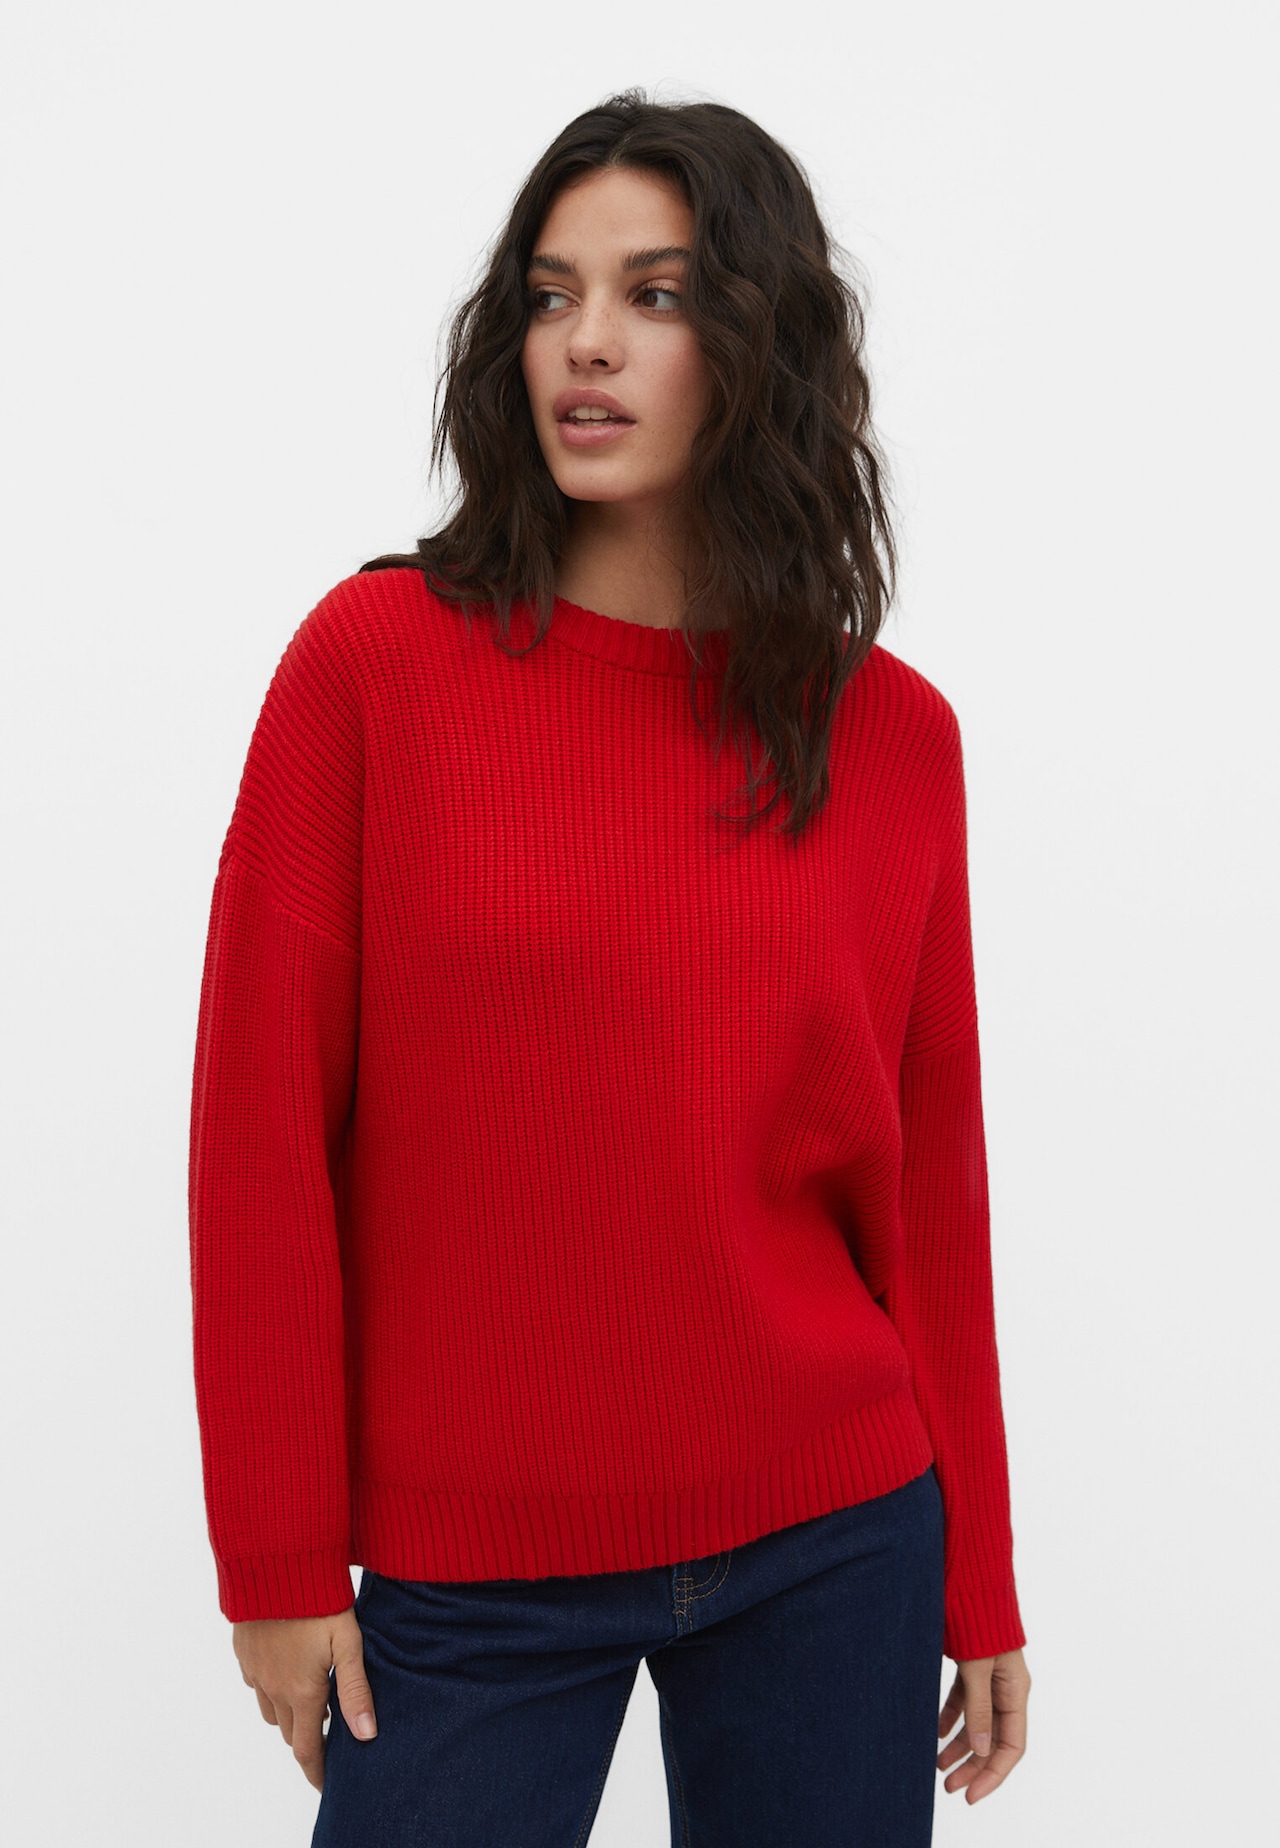 Knit sweater - Women's fashion